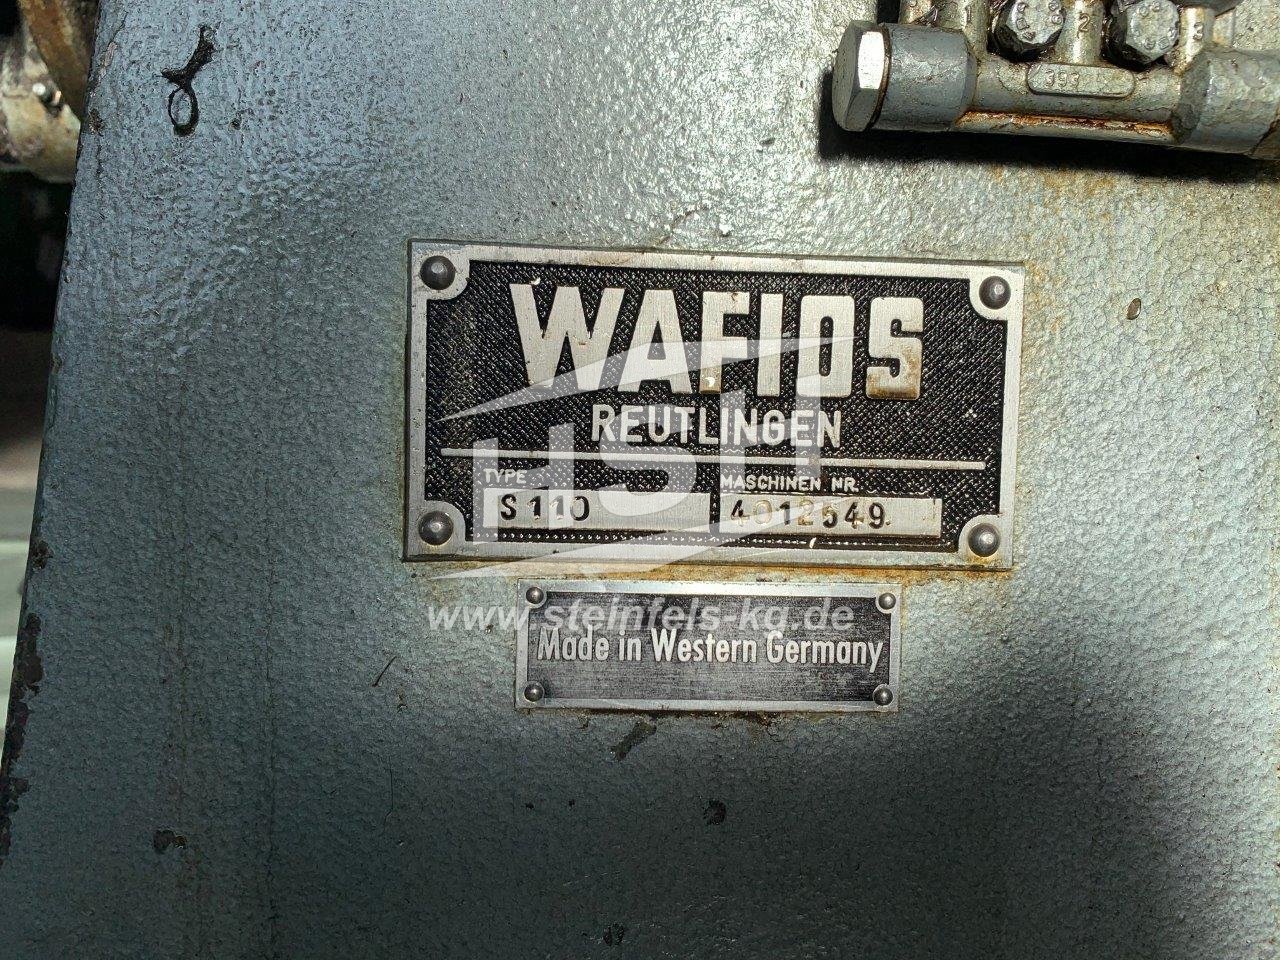 D12L/7882 — WAFIOS — S110 – 1972 – 2,2-3,8 mm